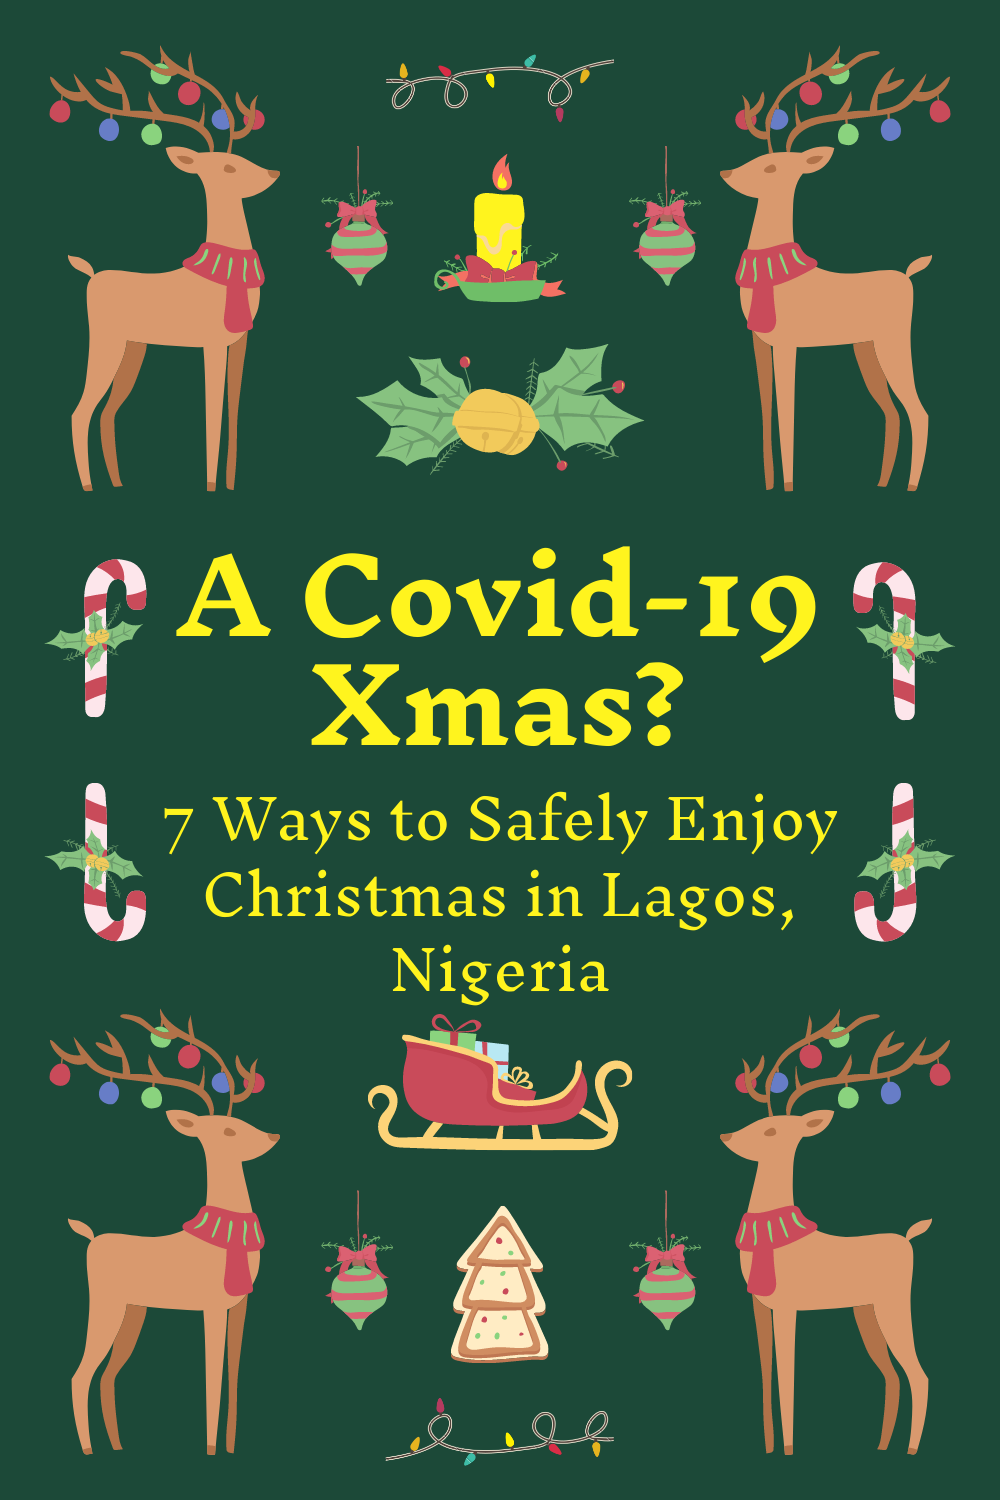 ways to safely enjoy Christmas in Lagos